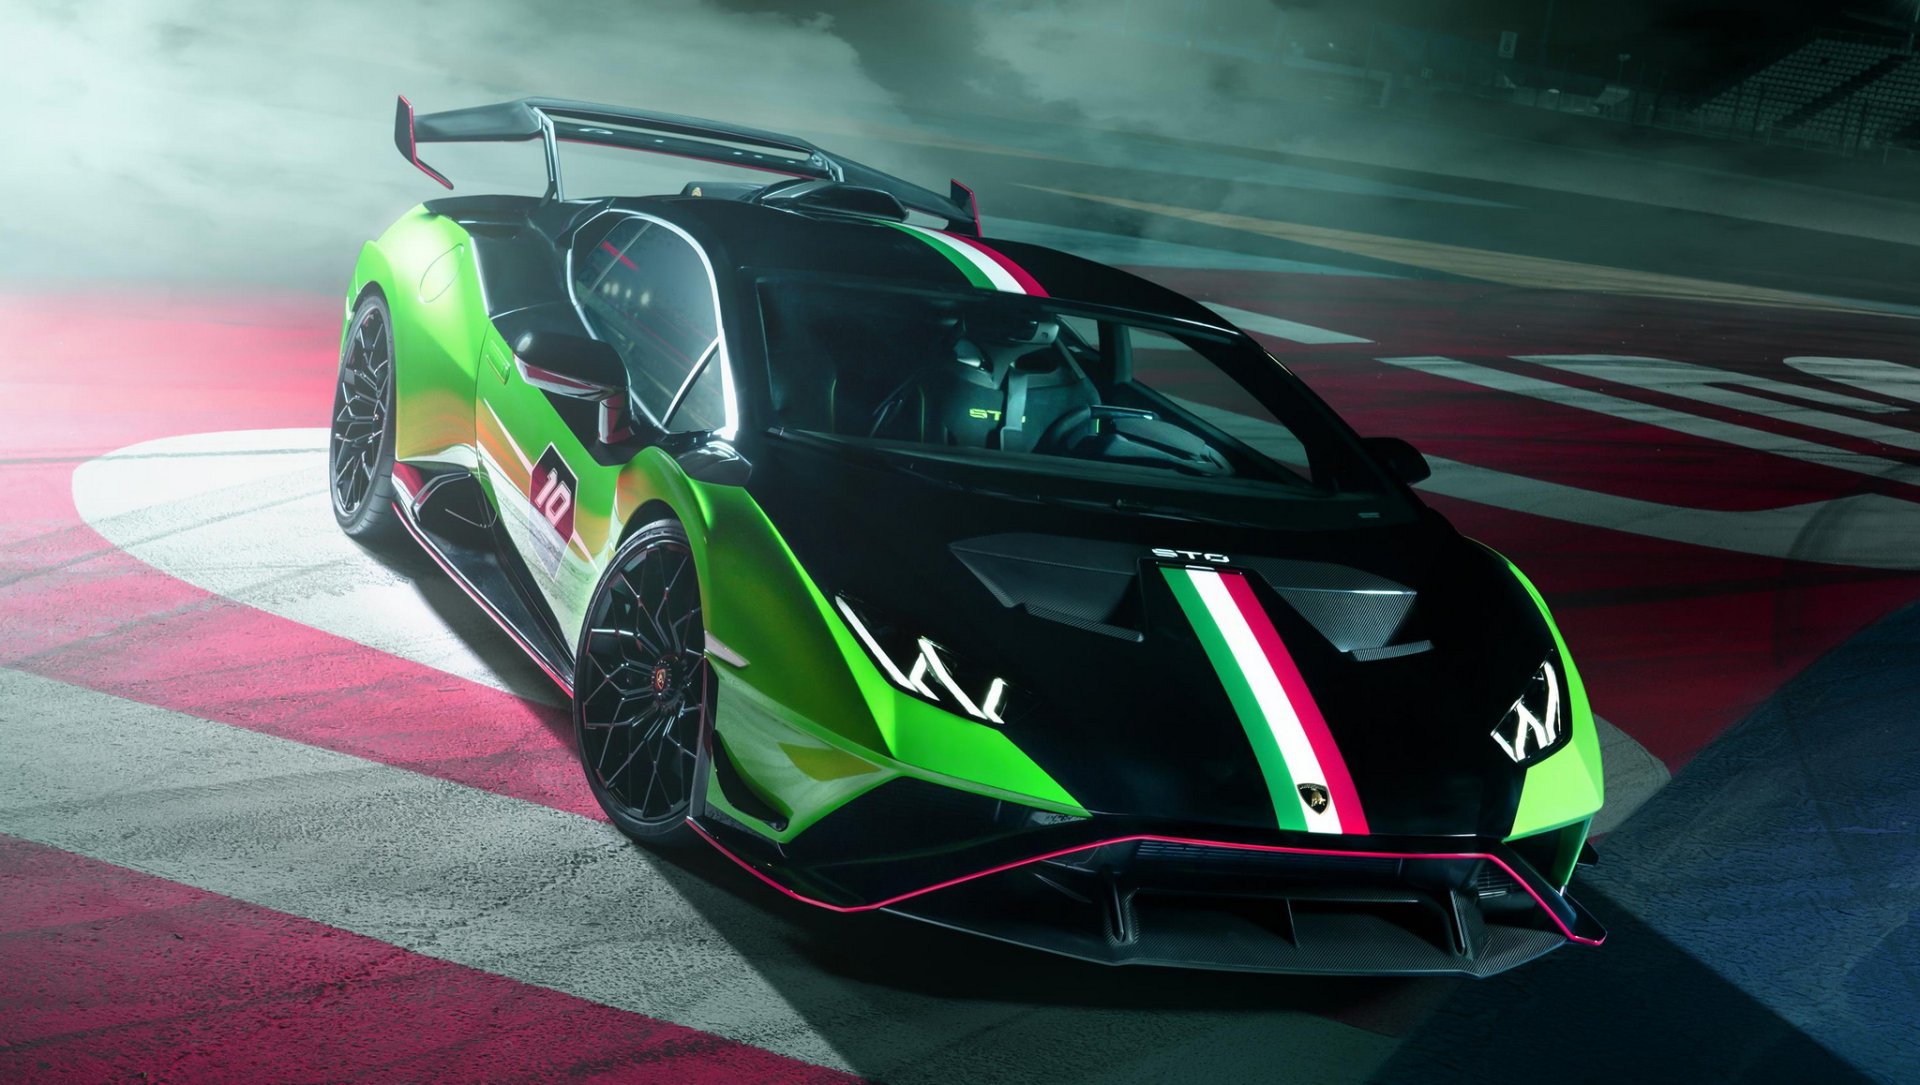 เปิดตัว!! Lamborghini Huracan STO SC 10° Anniversario ตัวลิมิเต็ดฉลองครบรอบ 10 ปี แผนก Squadra Corse